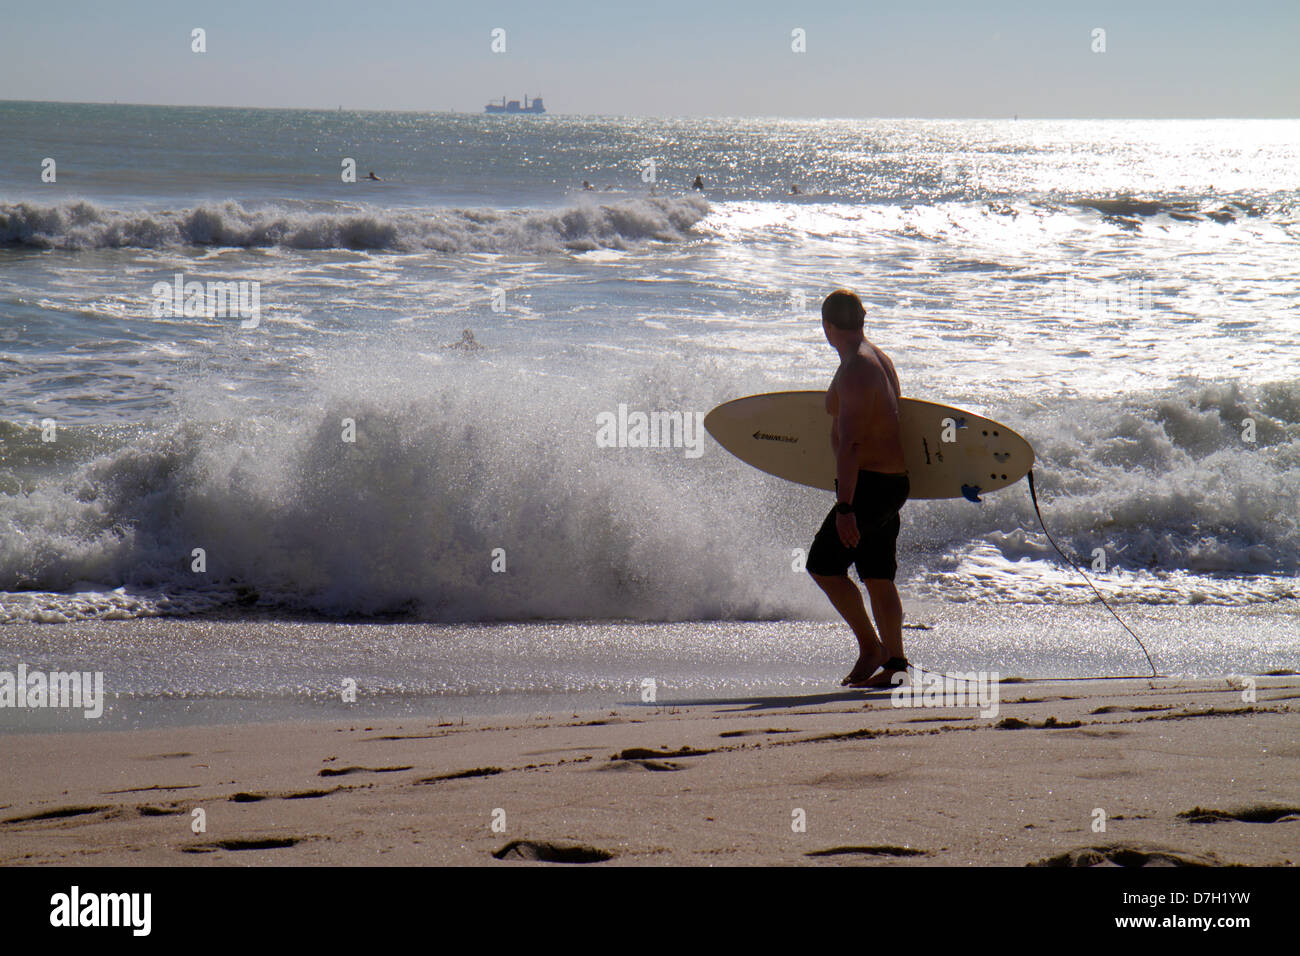 Miami Beach Florida, Atlantic Ocean Water Public, Strandstrände, Ufer, Surfen, Wellen, Wasser, Wasser, Männer Männer Erwachsene Erwachsene, Surfer, Surfbrett, Besucher reisen Stockfoto